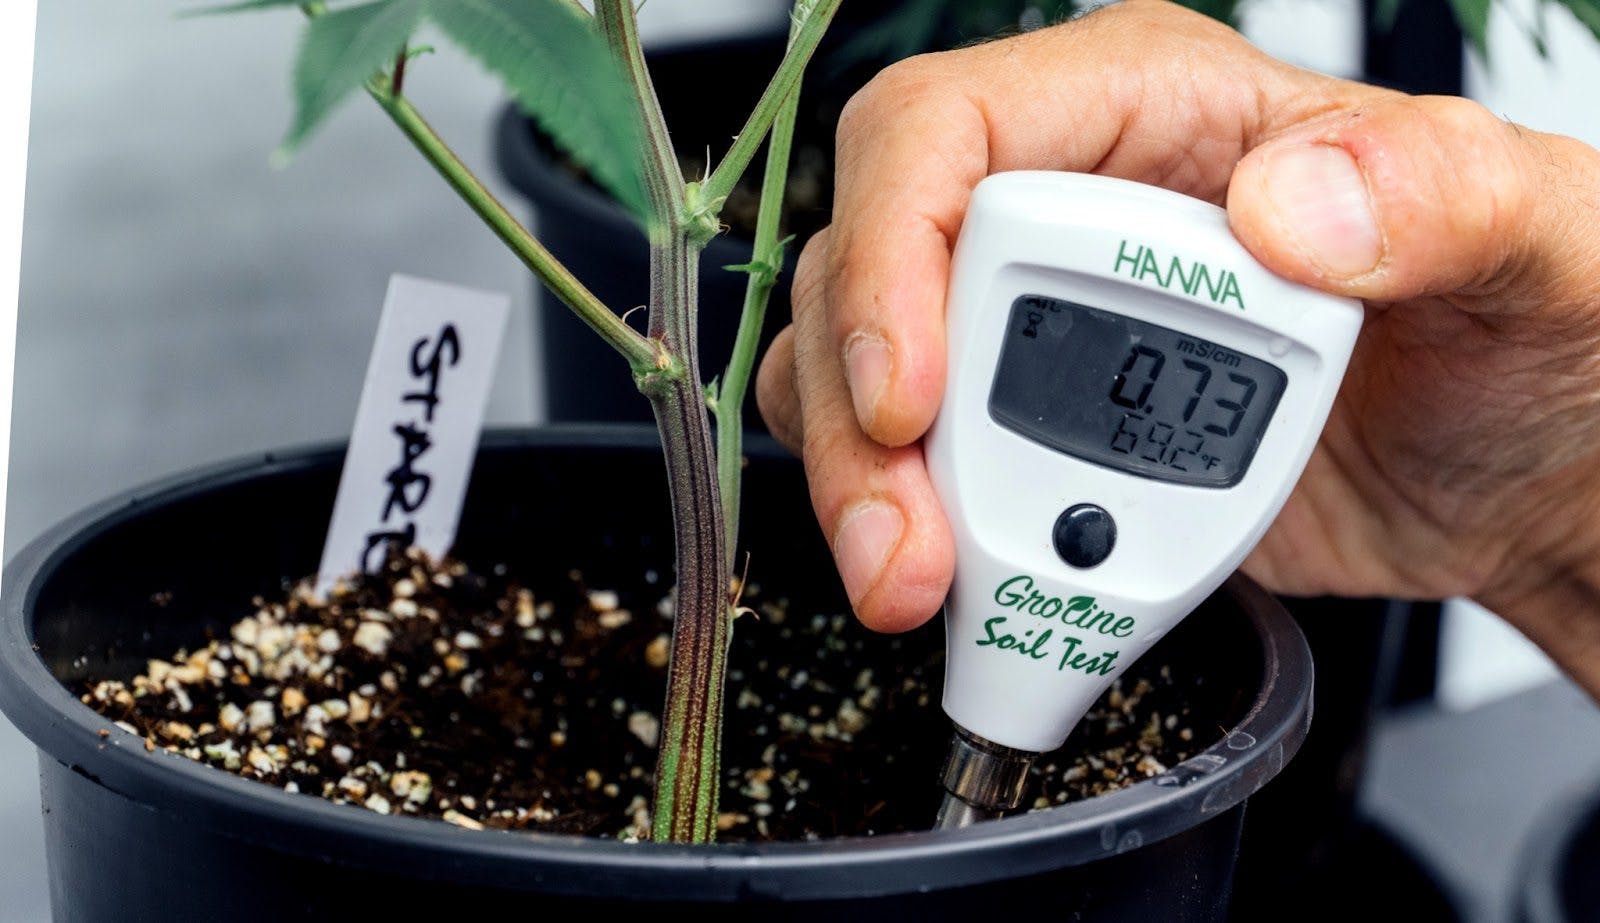 control de la temperatura de una planta